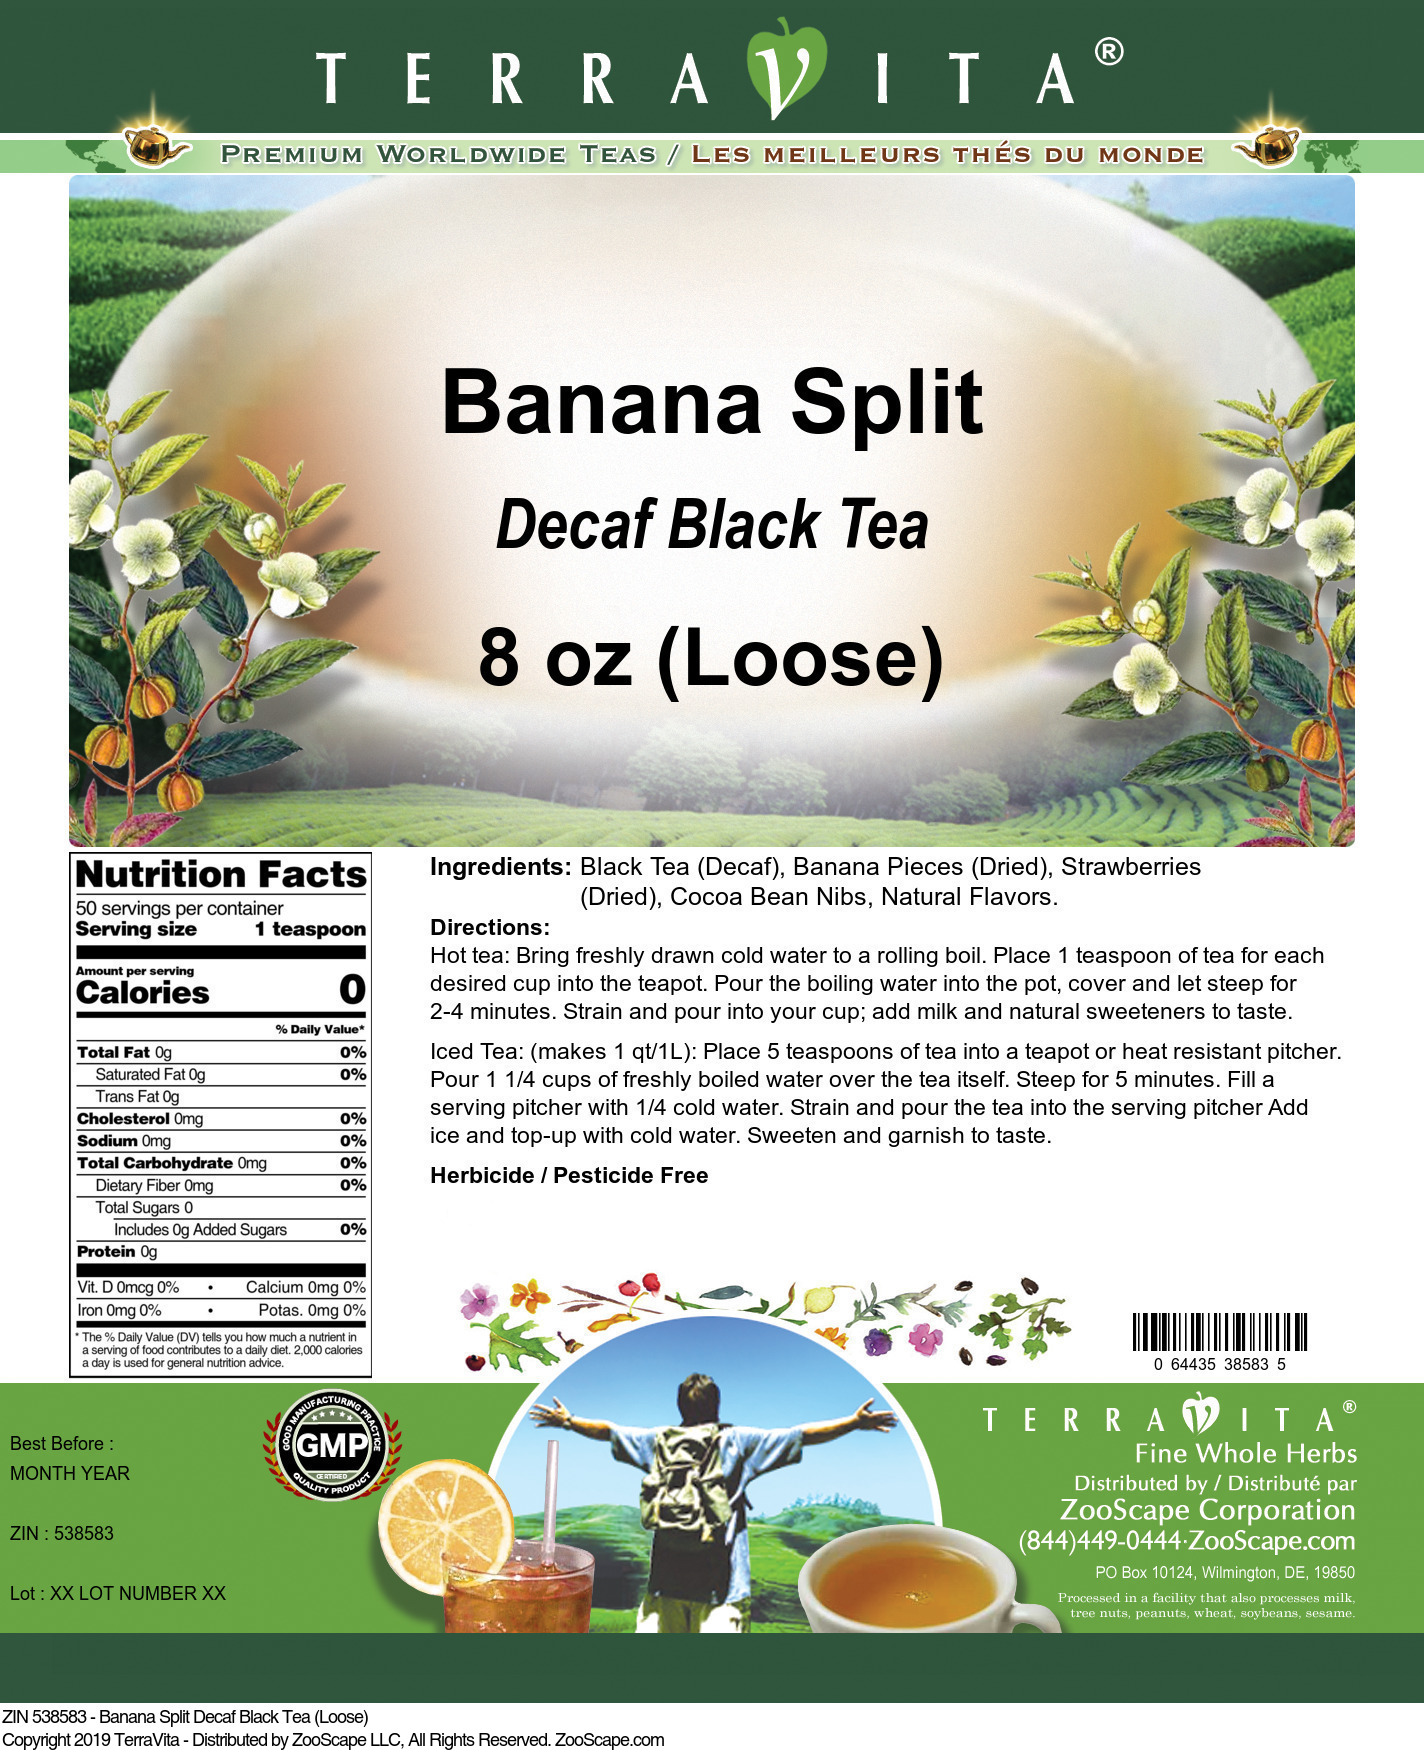 Banana Split Decaf Black Tea (Loose) - Label